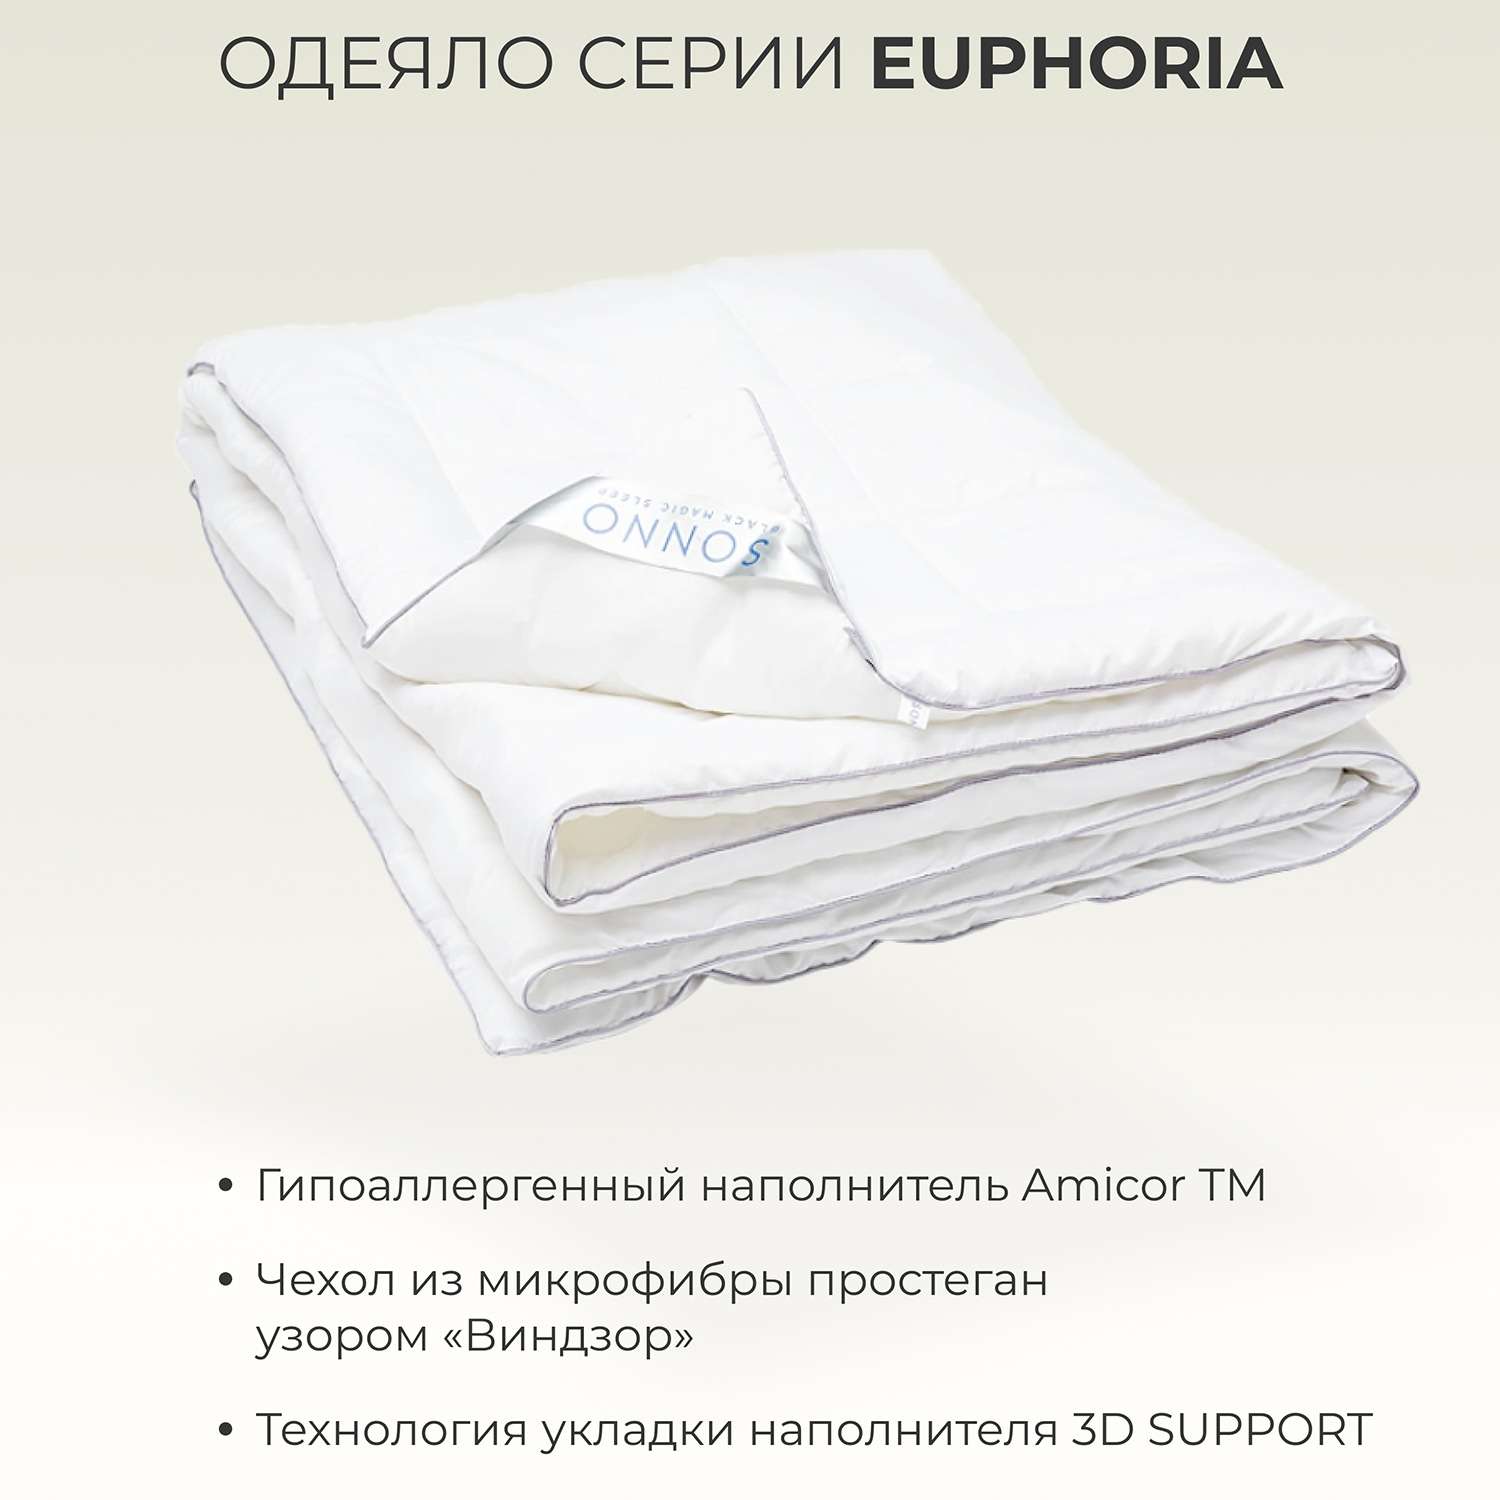 Одеяло SONNO EUPHORIA 1.5-сп. 140х205 см гипоаллергенное наполнитель Amicor TM - фото 2